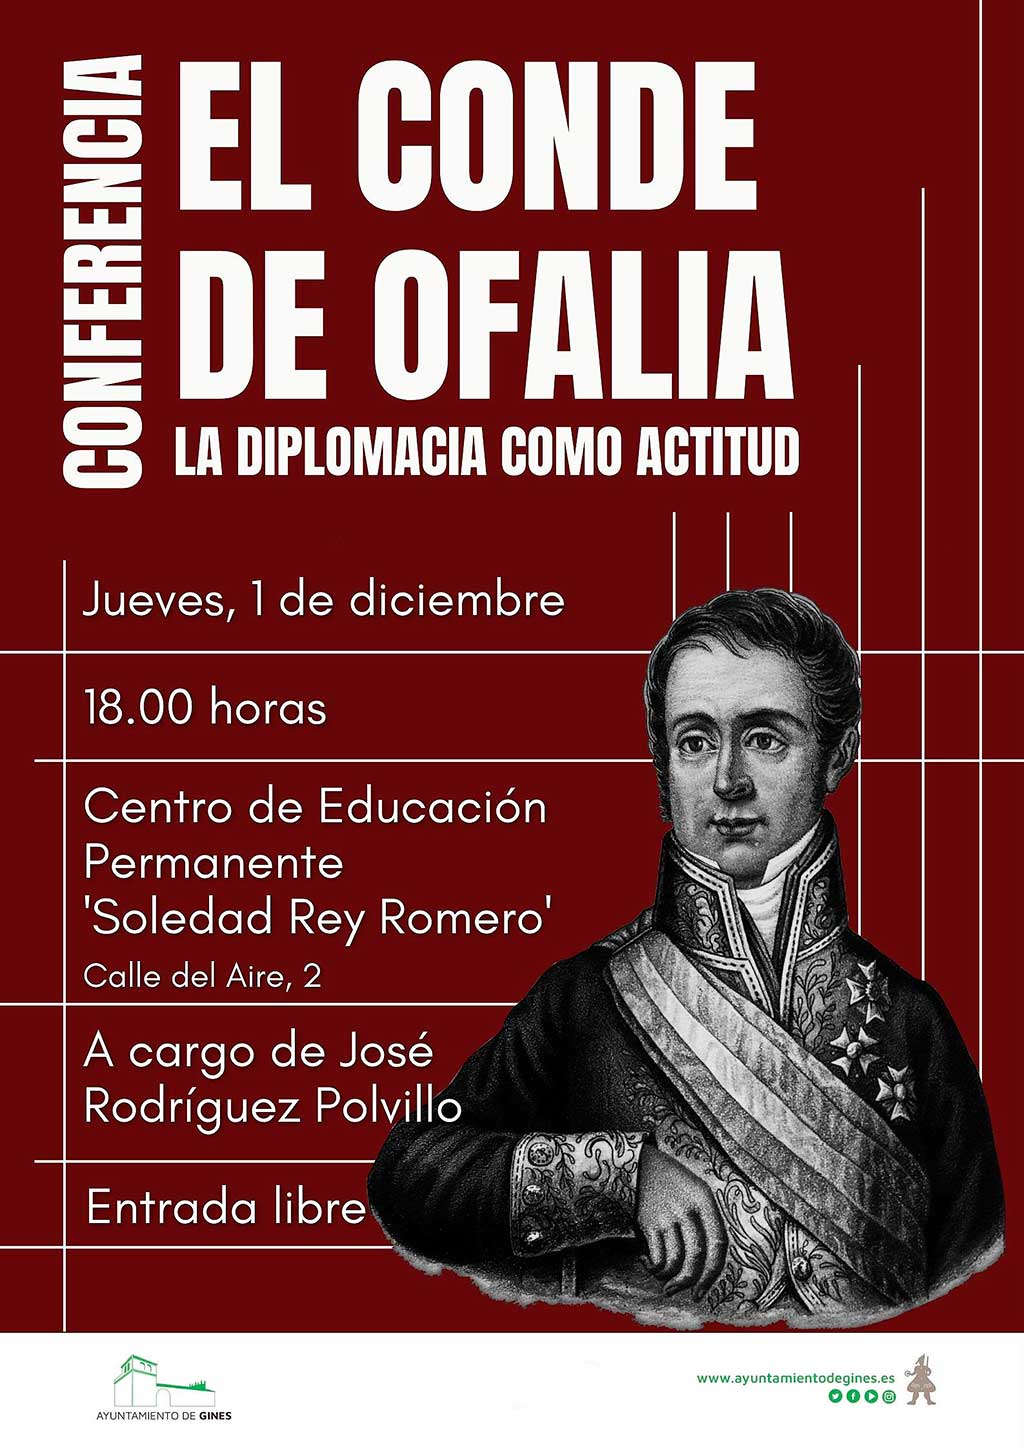 El ginense Conde de Ofalia será el protagonista de una conferencia en su pueblo natal